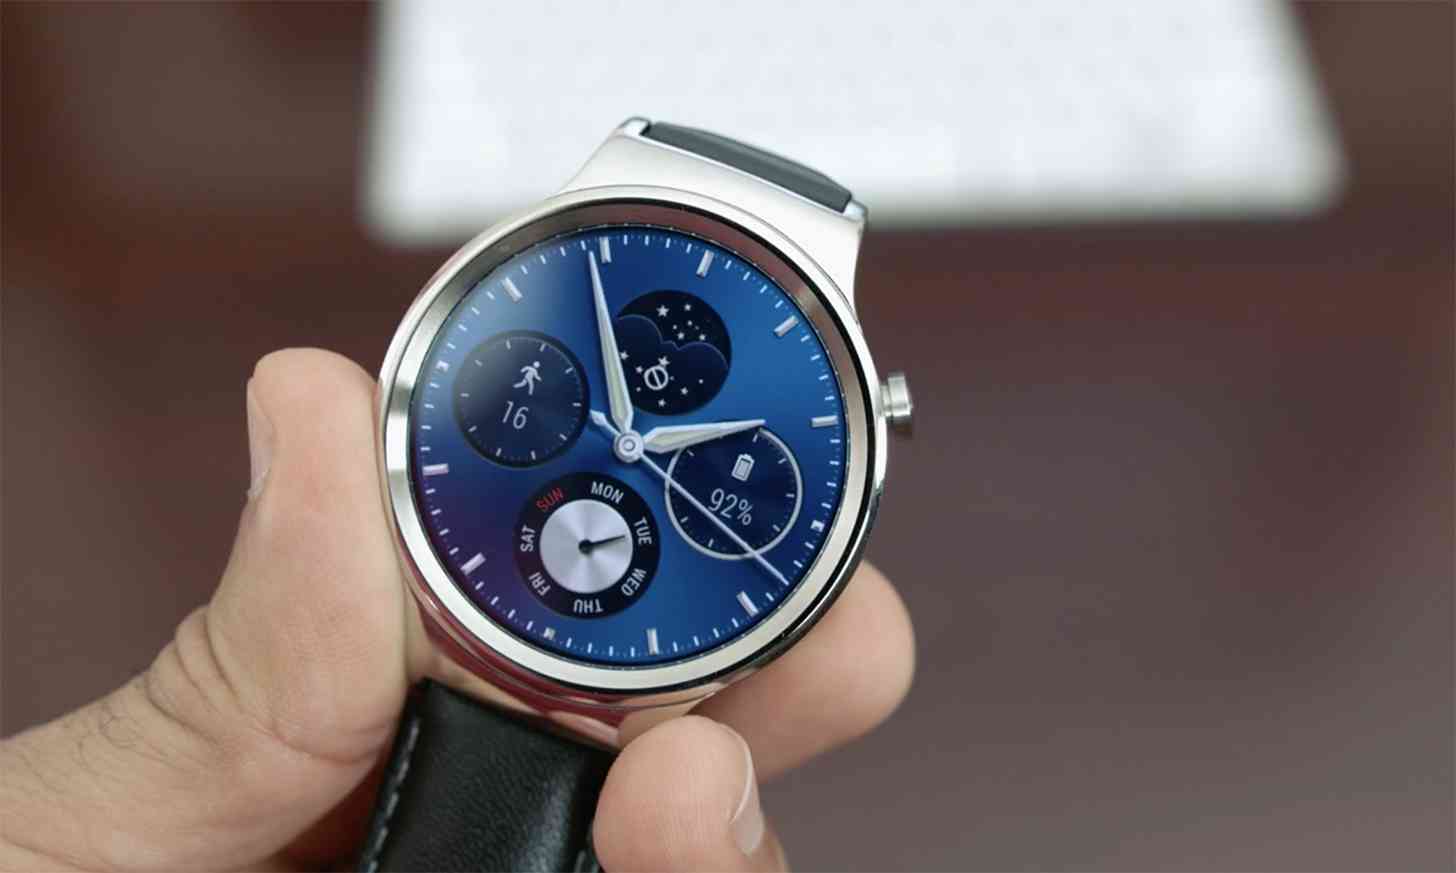 Huawei Watch review